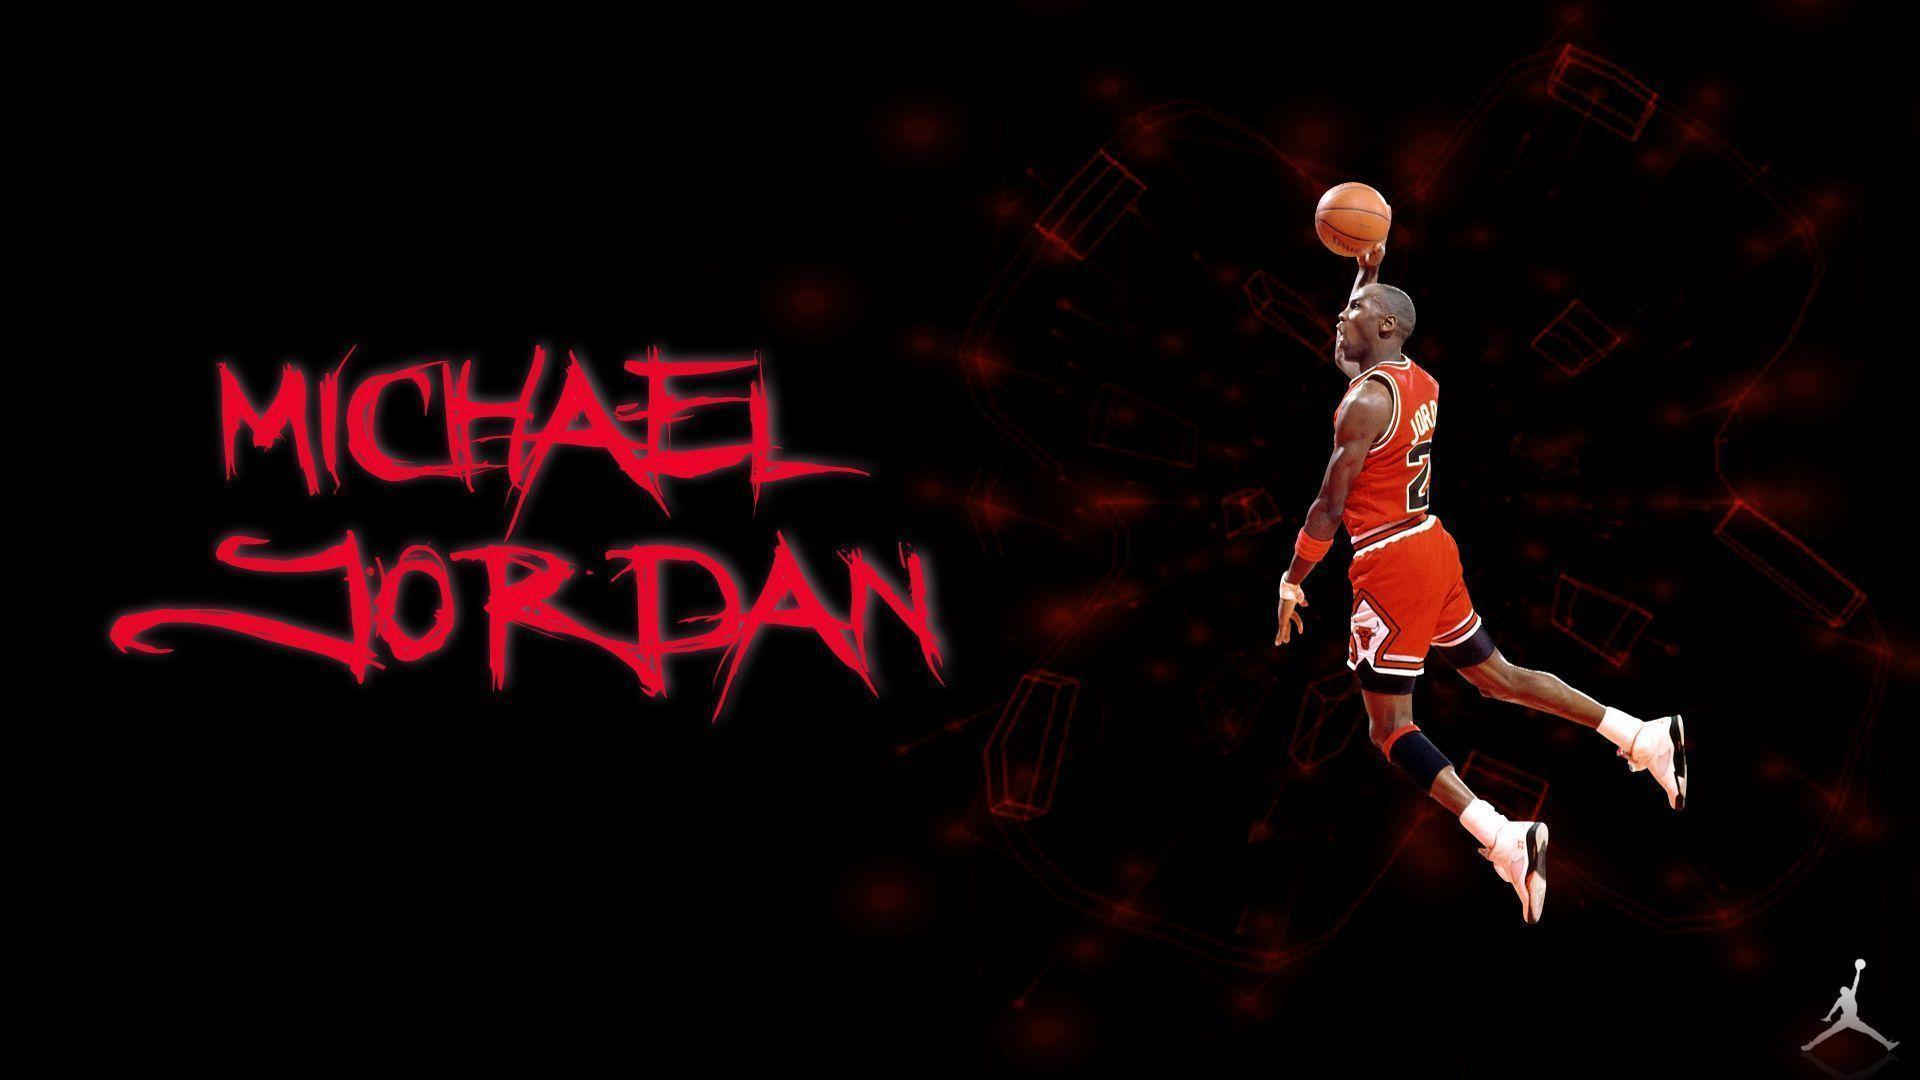 Michael Jordan Logo 57 117074 Image HD Wallpapers